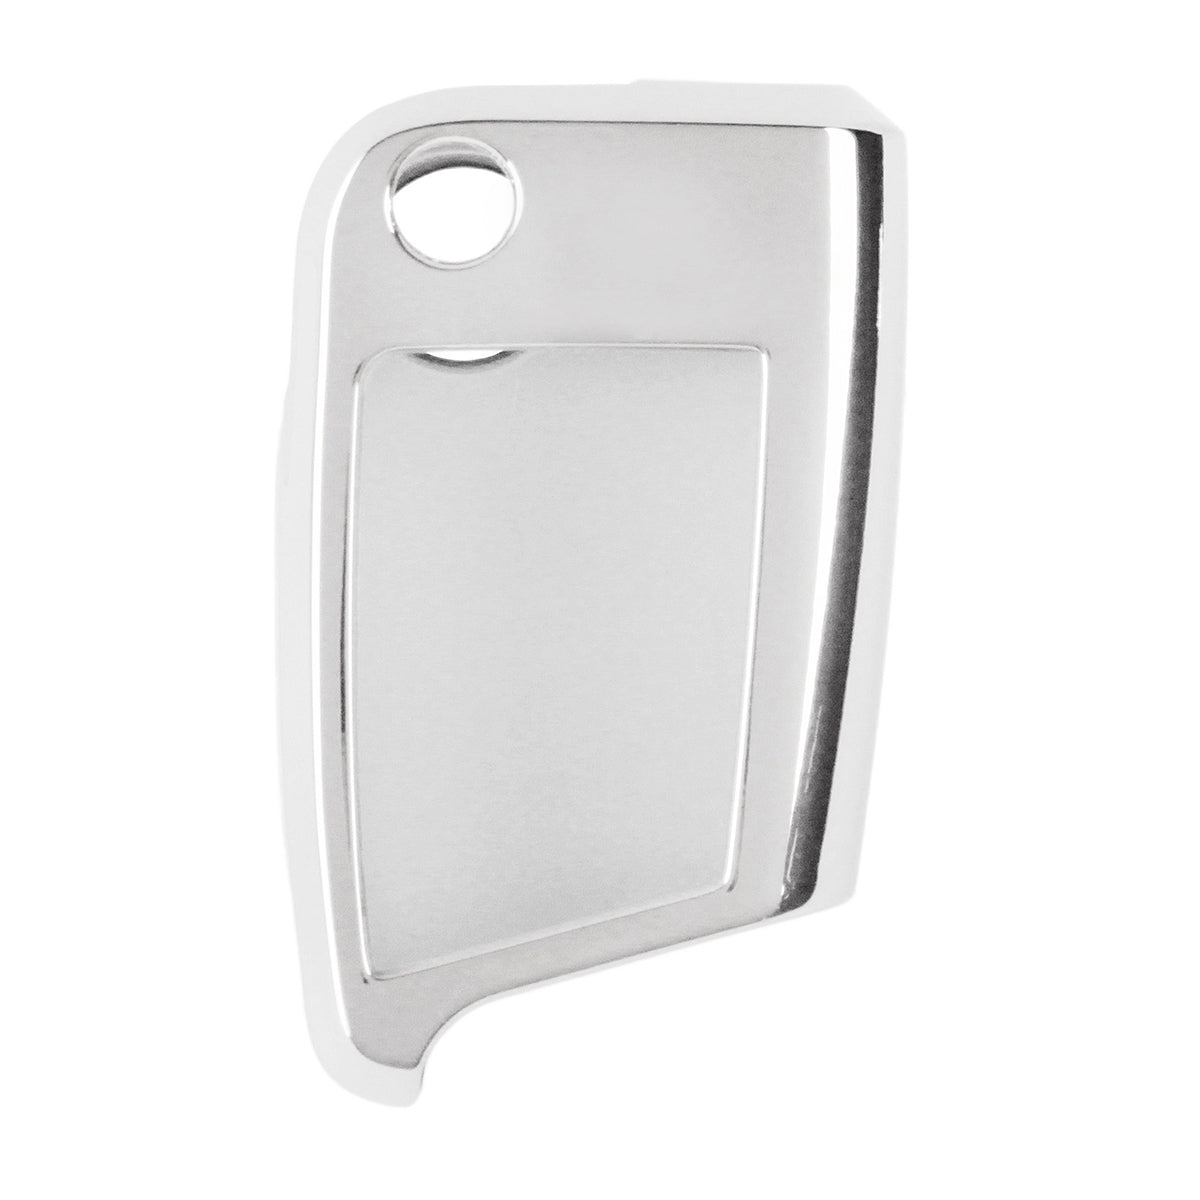 Light Gray TPU Remote Protect Car Key Case Cover Shell For VW TIGUAN Golf Skoda Octavia